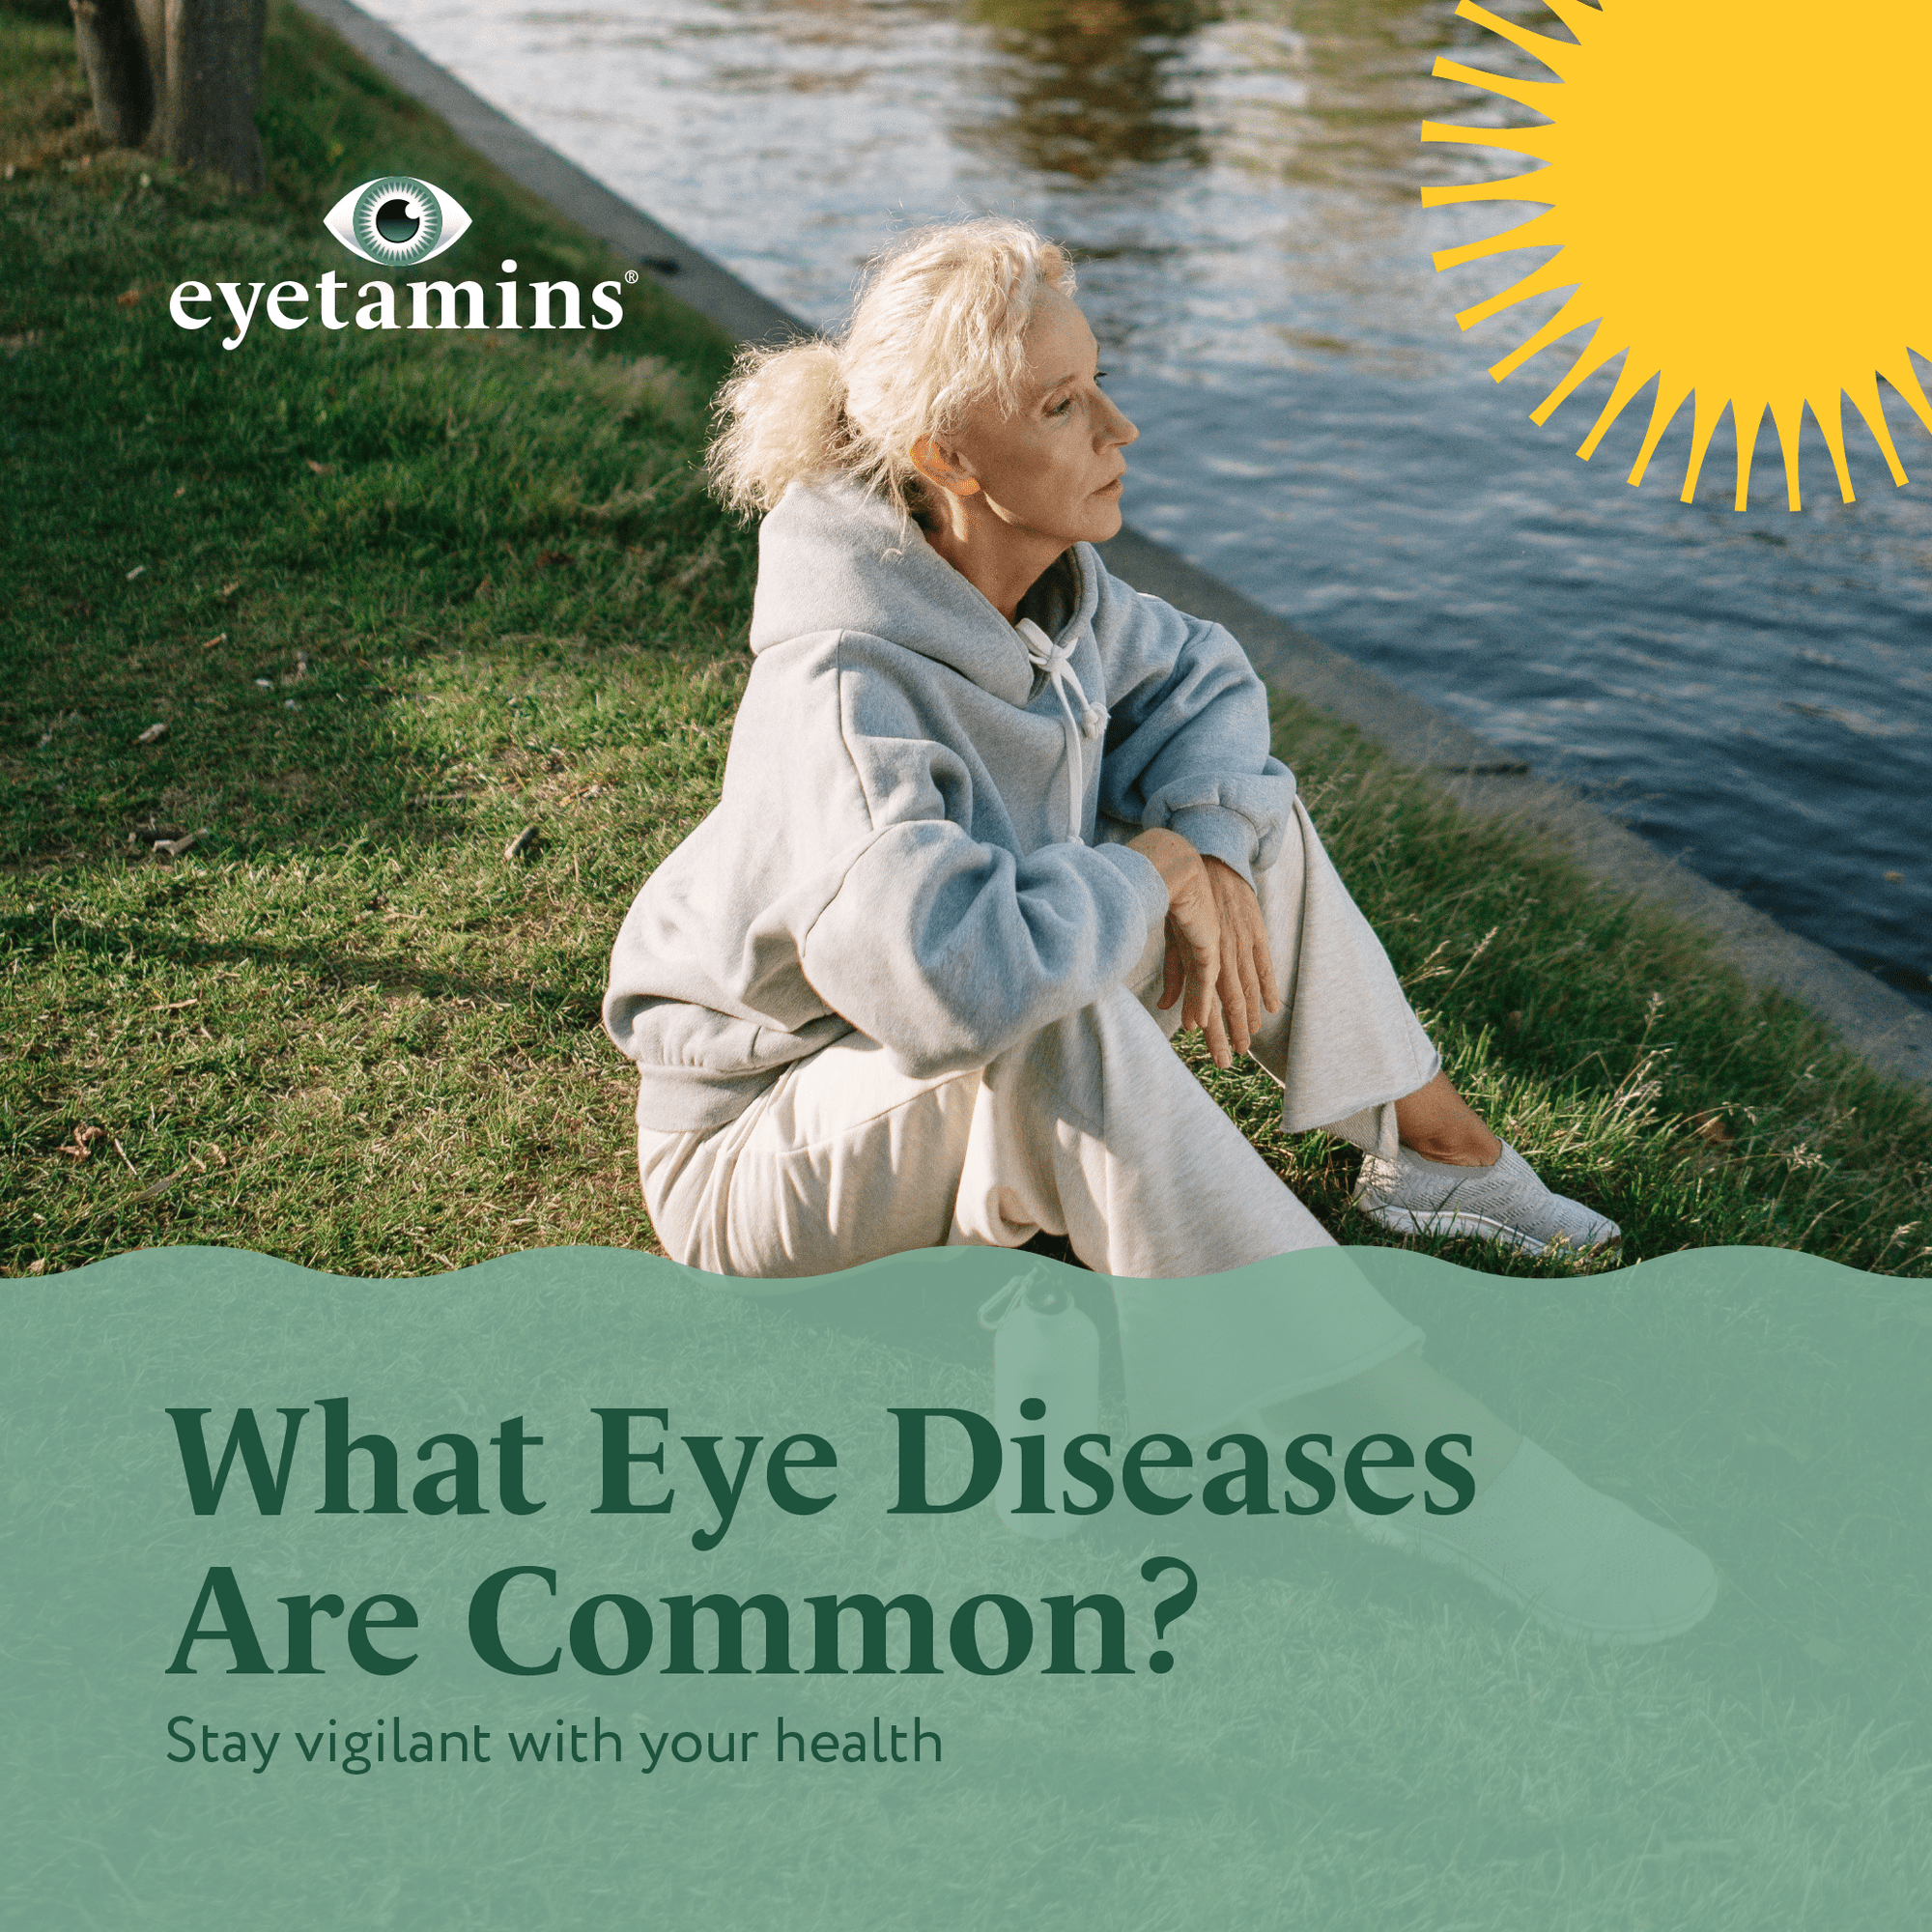 Eyetamins - What Eye Diseases Are Common?